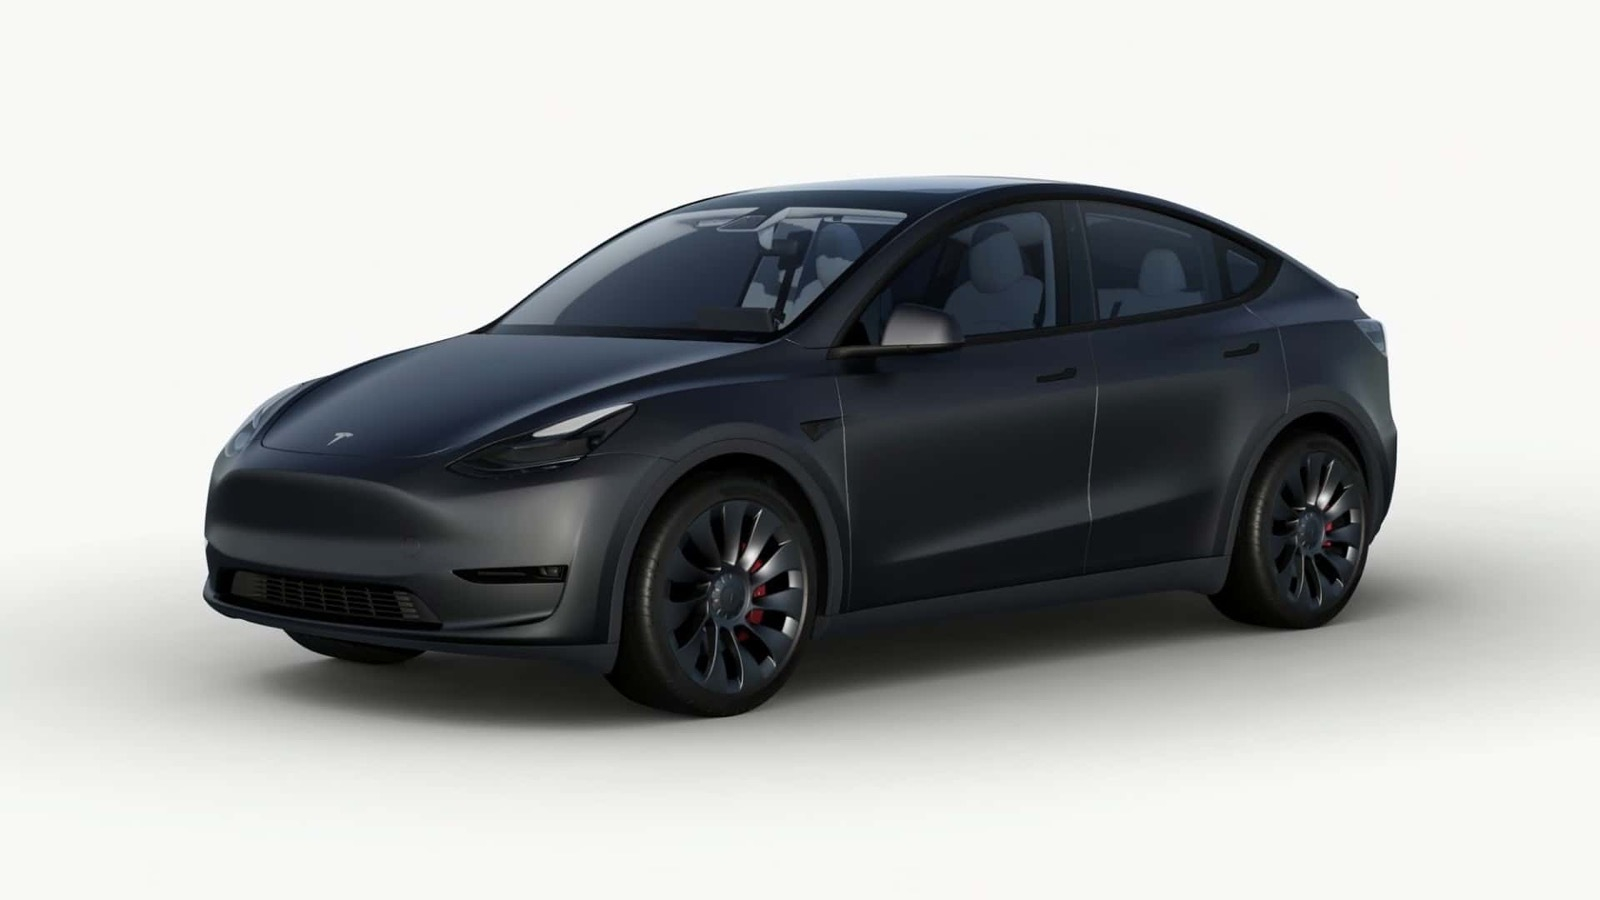 Tesla Model Y: Mit Hinterradantrieb nun günstiger zu haben